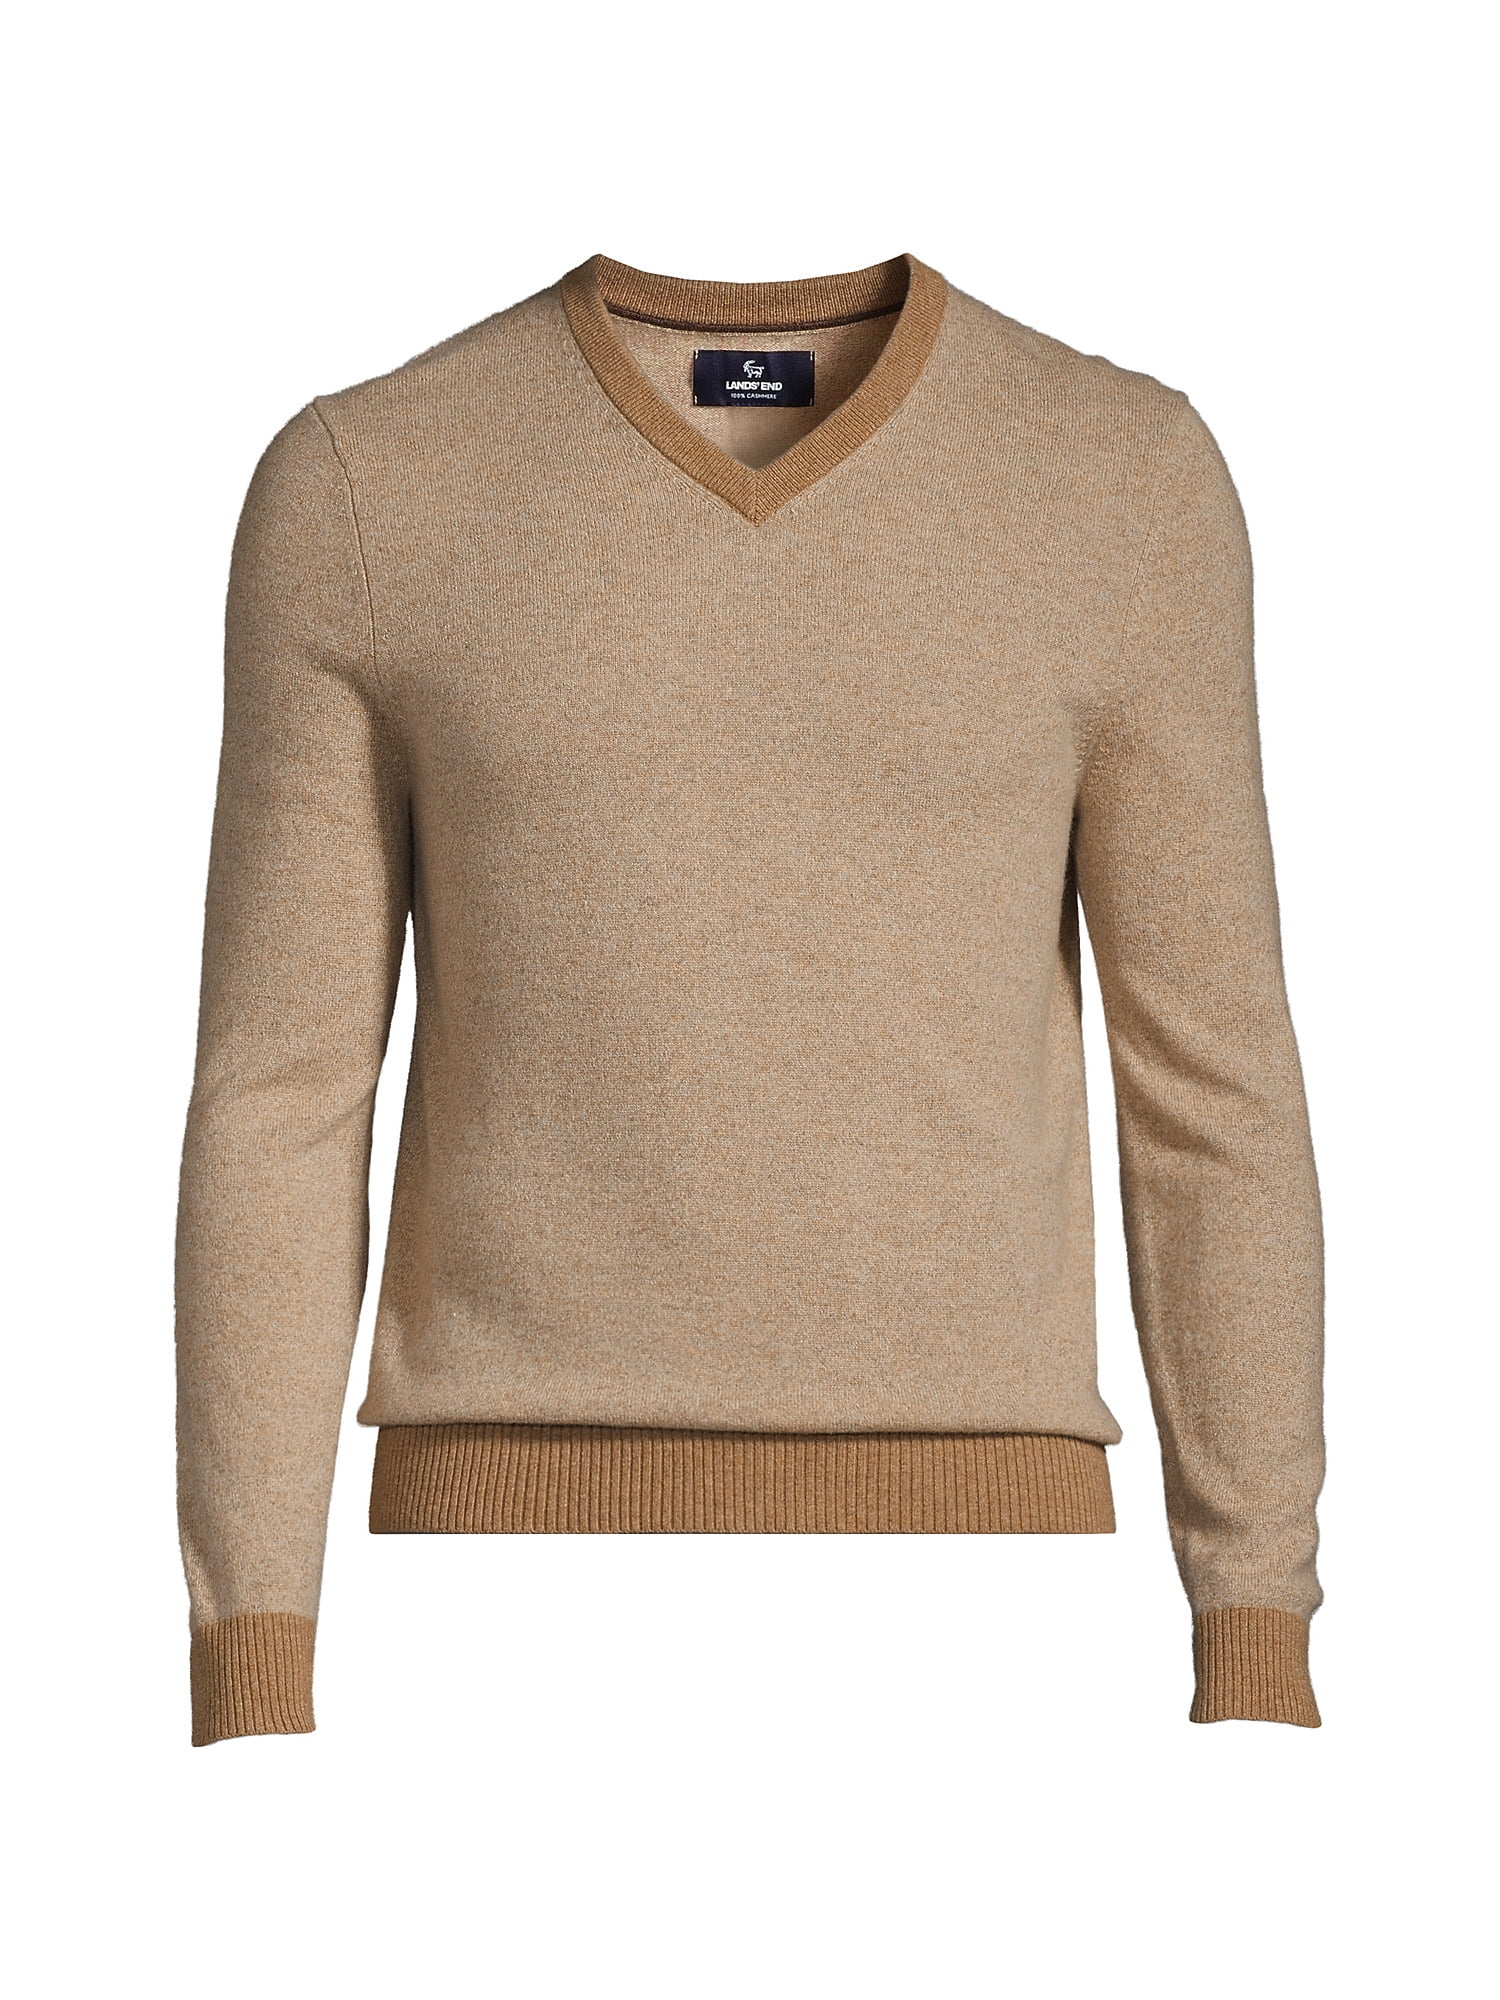 Lands' End Men's Fine Gauge Cashmere V-neck Sweater